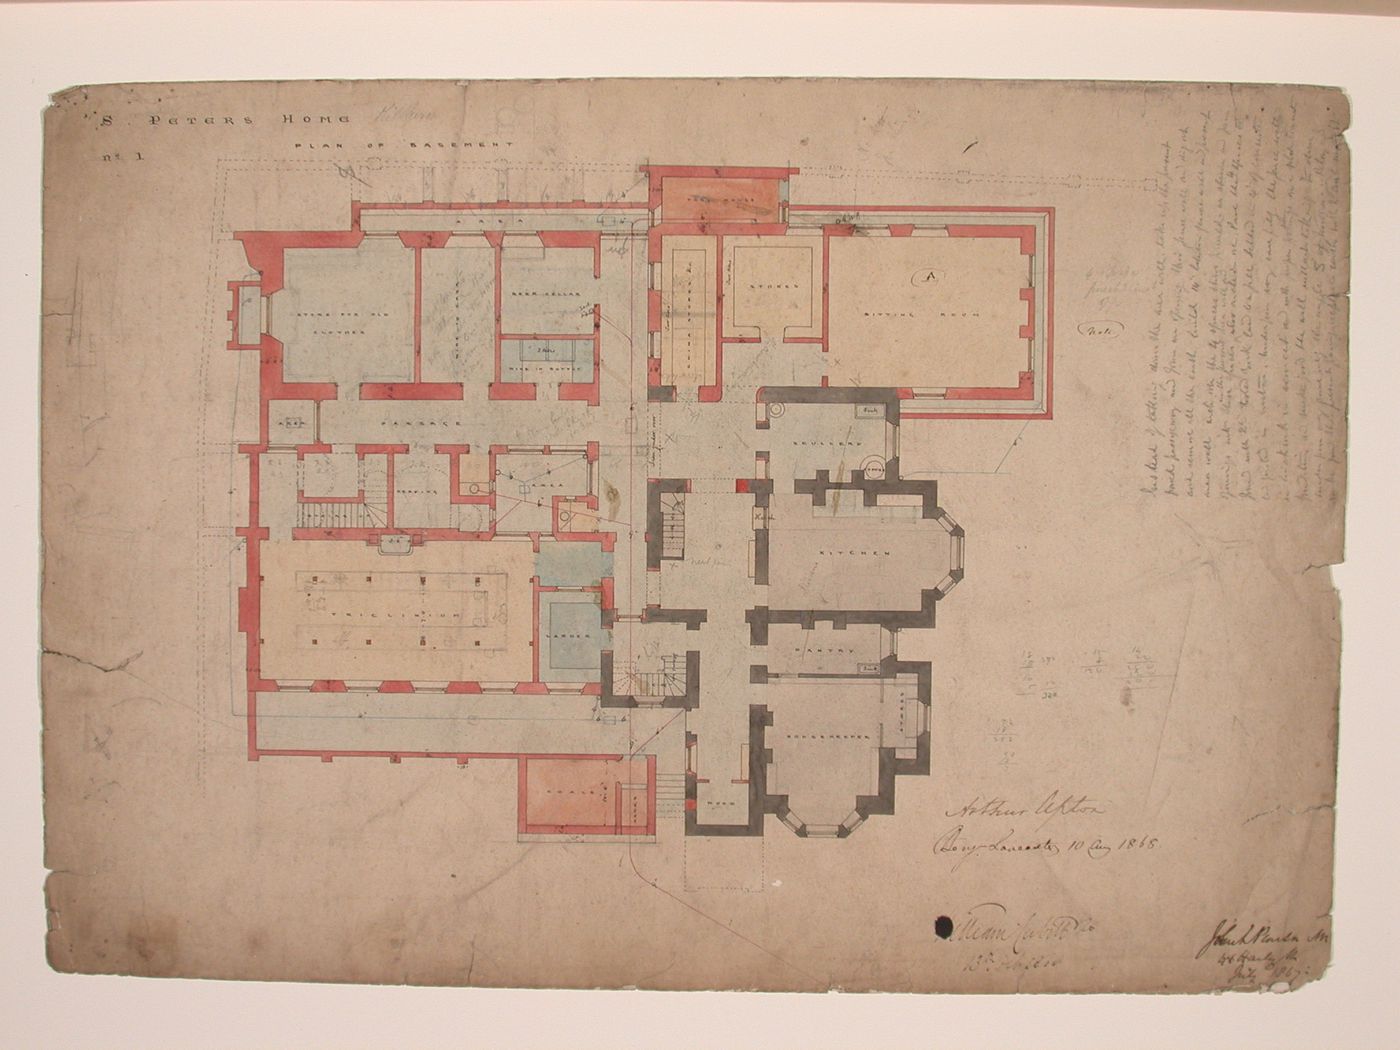 St. Peter's Home, Kilburn: Basement plan